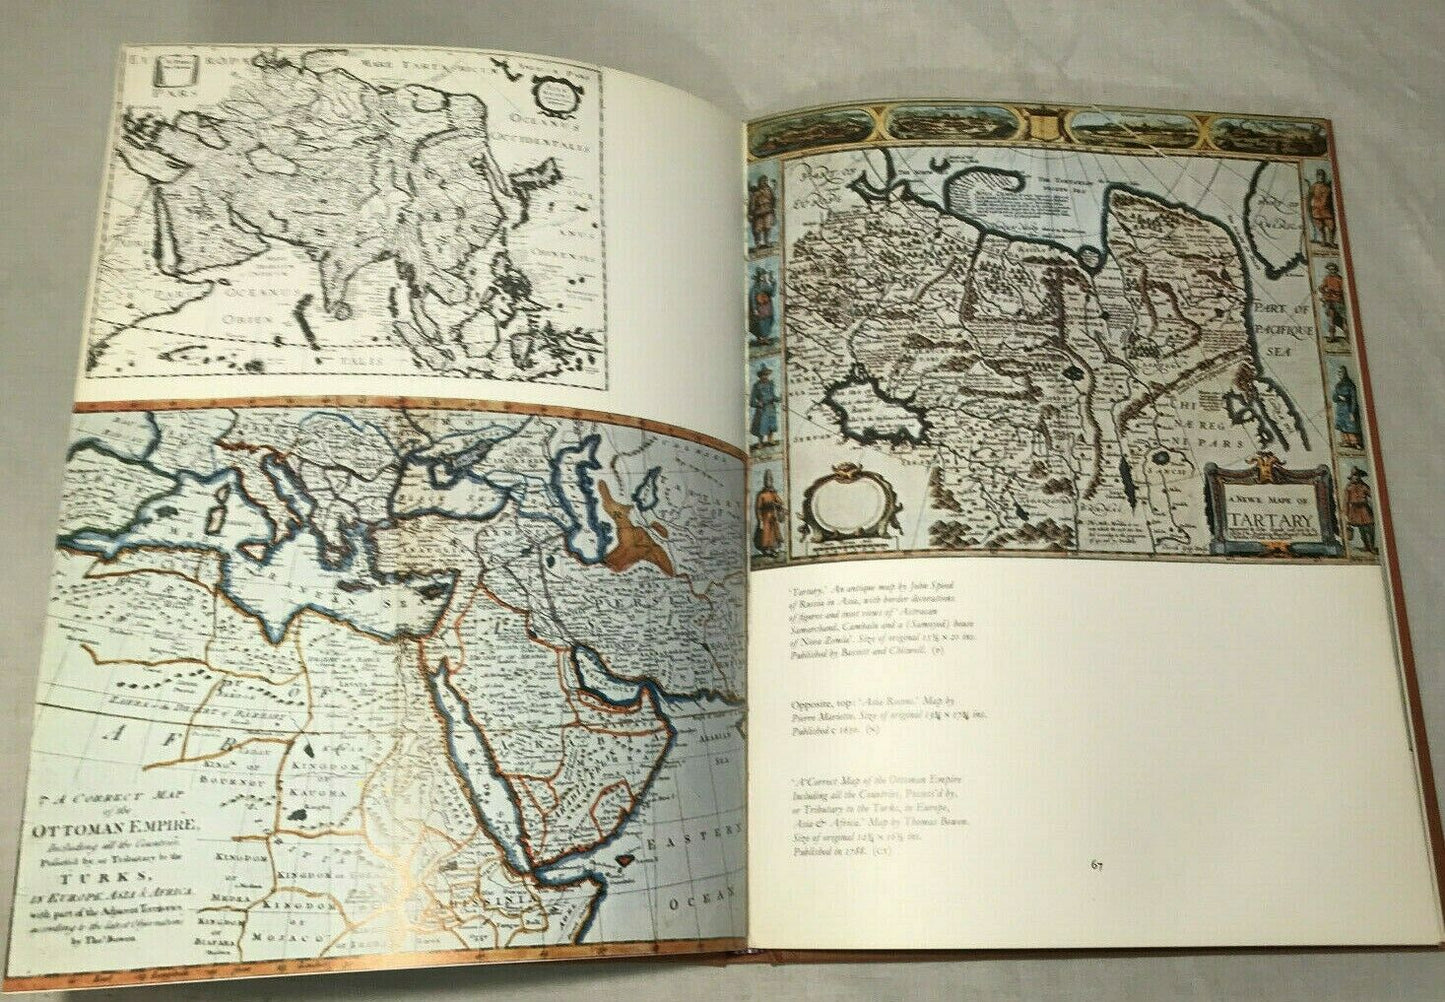 Antique Maps, Douglas Gohm (1972)